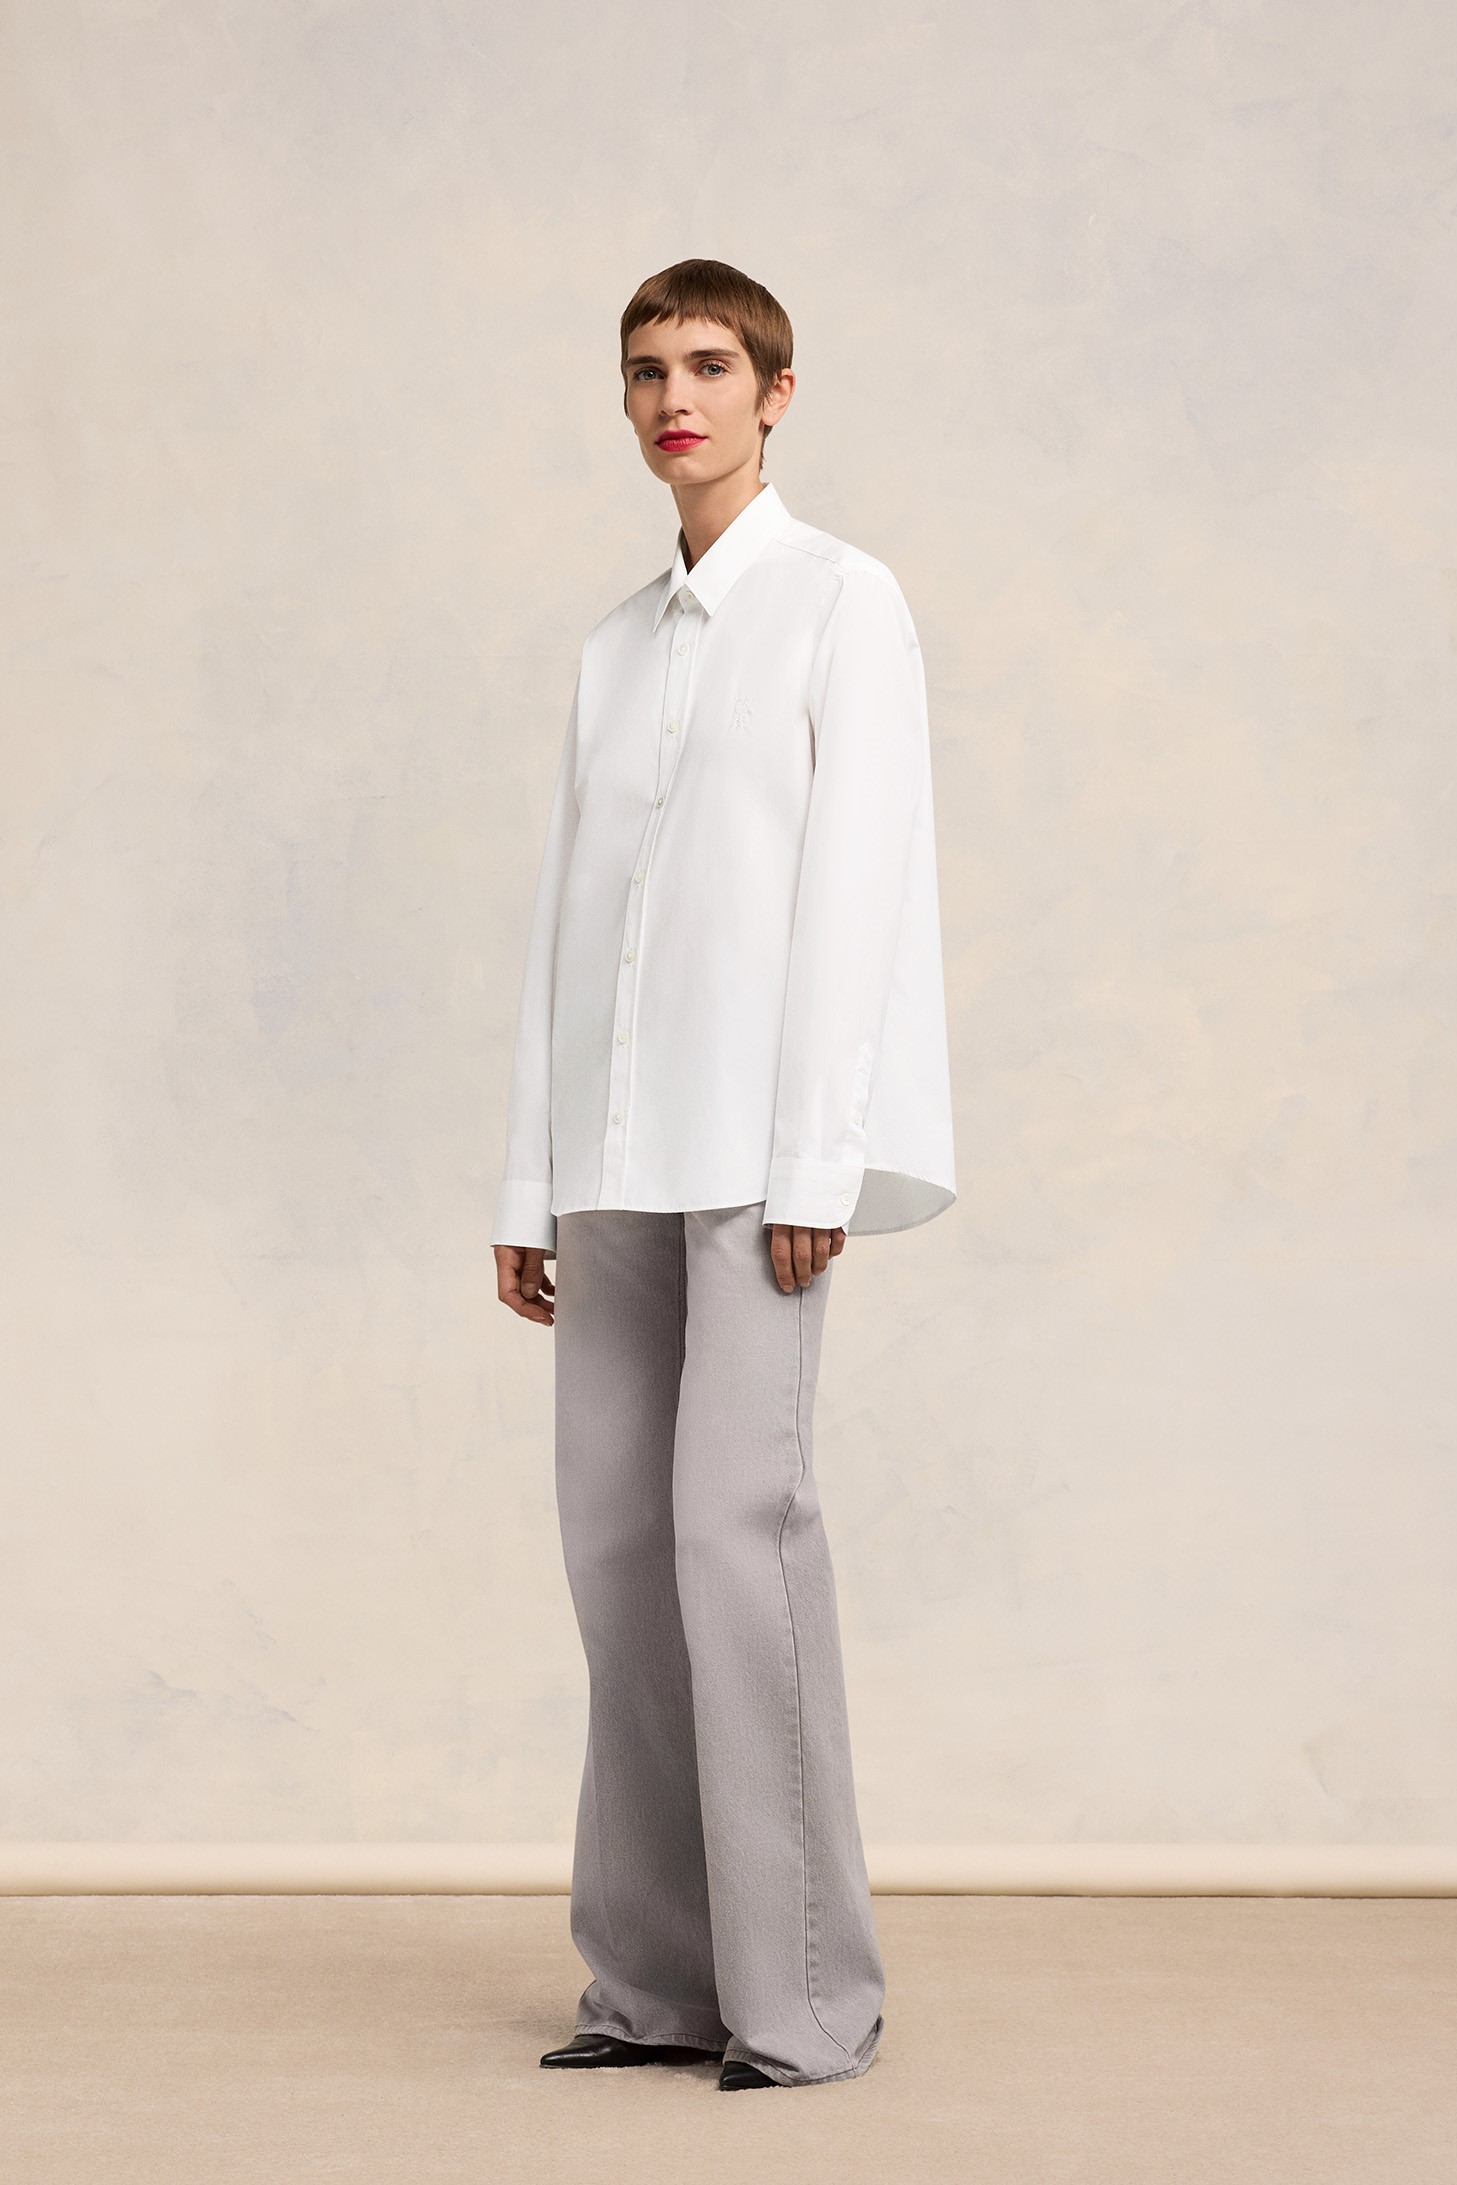 AMI PARIS de Coeur Classic Shirt in White XL